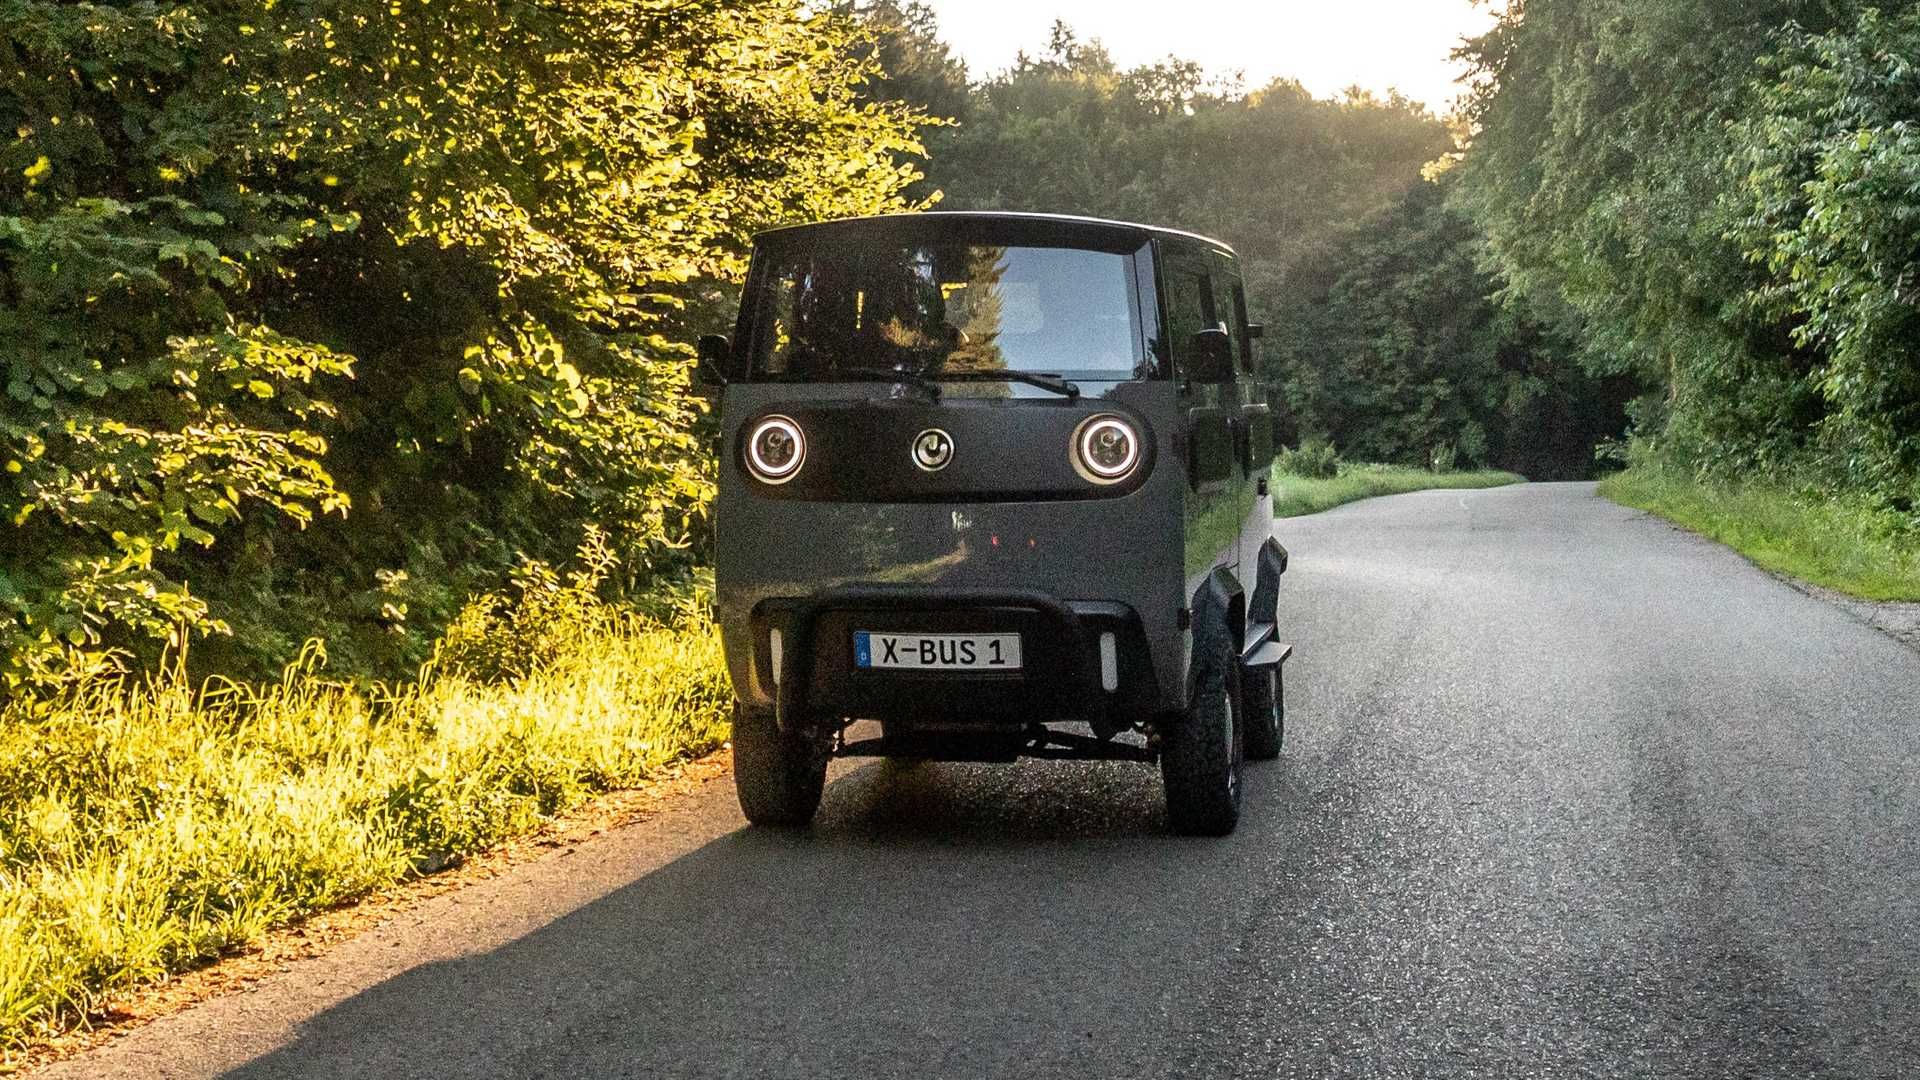 نمای جلو پلتفرم خودروی الکتریکی ایکس باس / Xbus electric vehicle با منظره جنگل